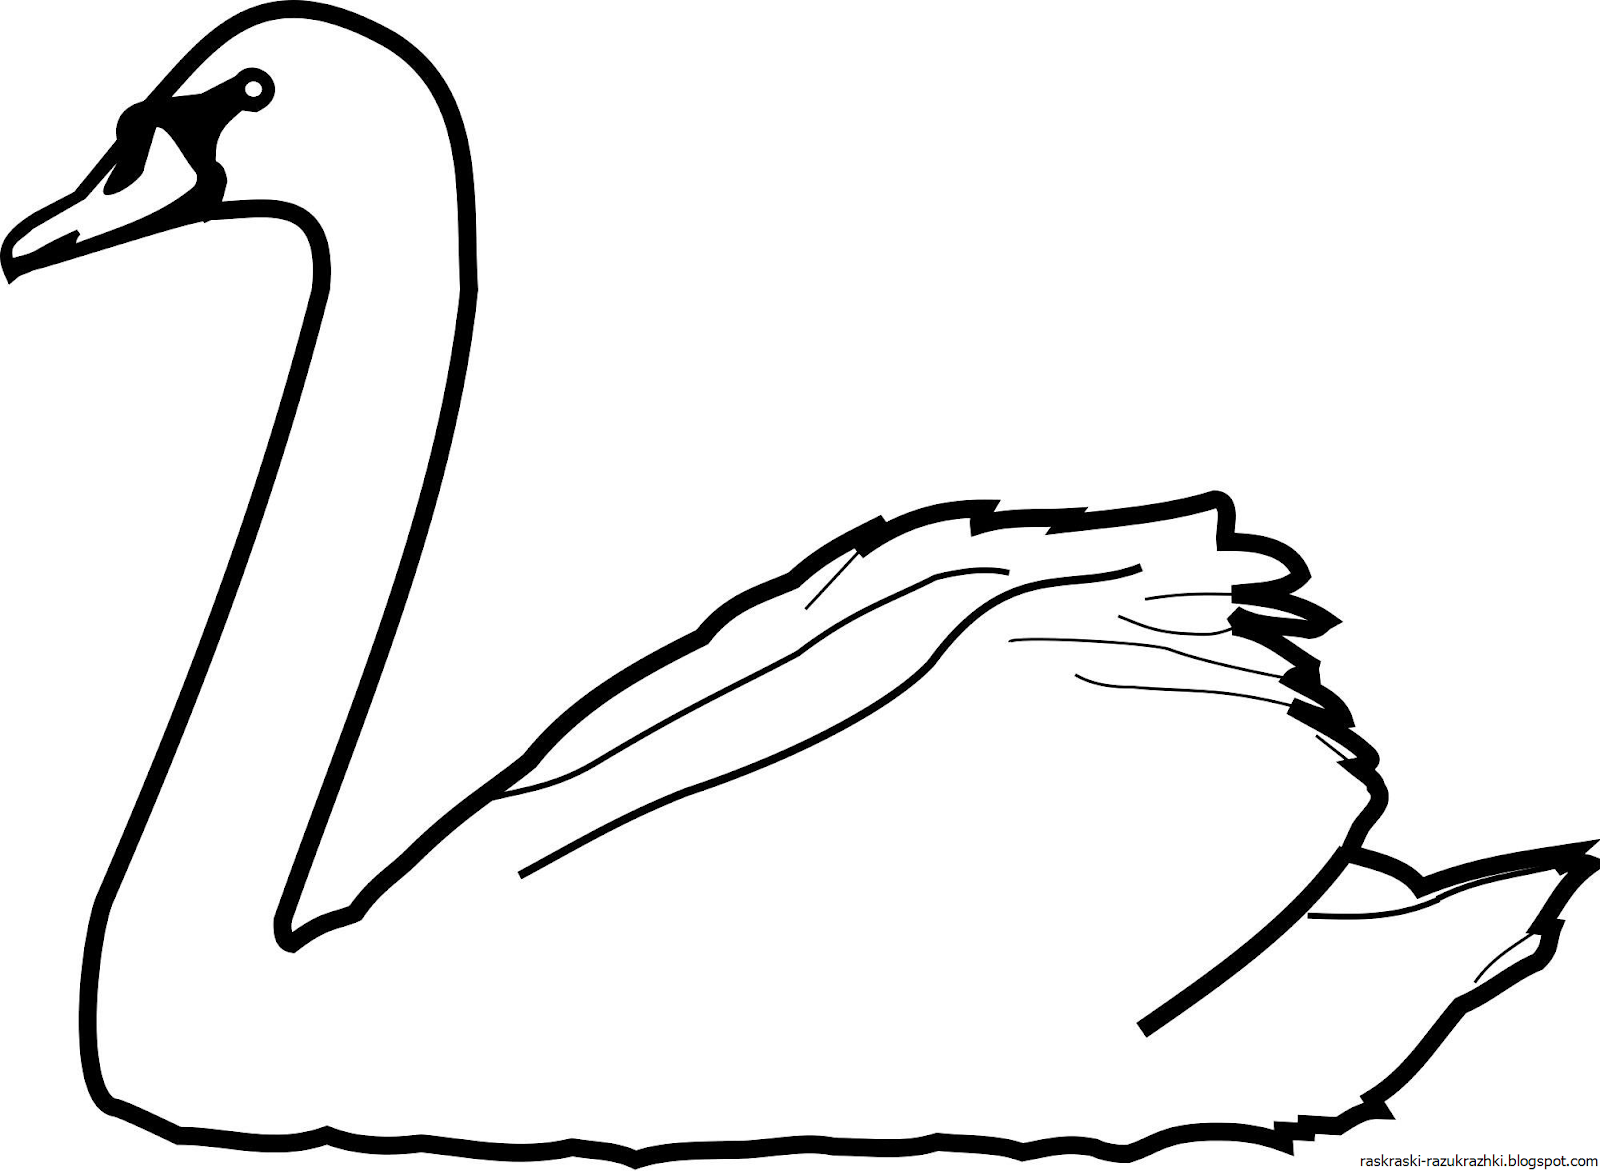 Распечатать картинку лебедь. Лебедь раскраска. Лебедь раскраска для детей. Лебедь контур. Лебедь рисунок.